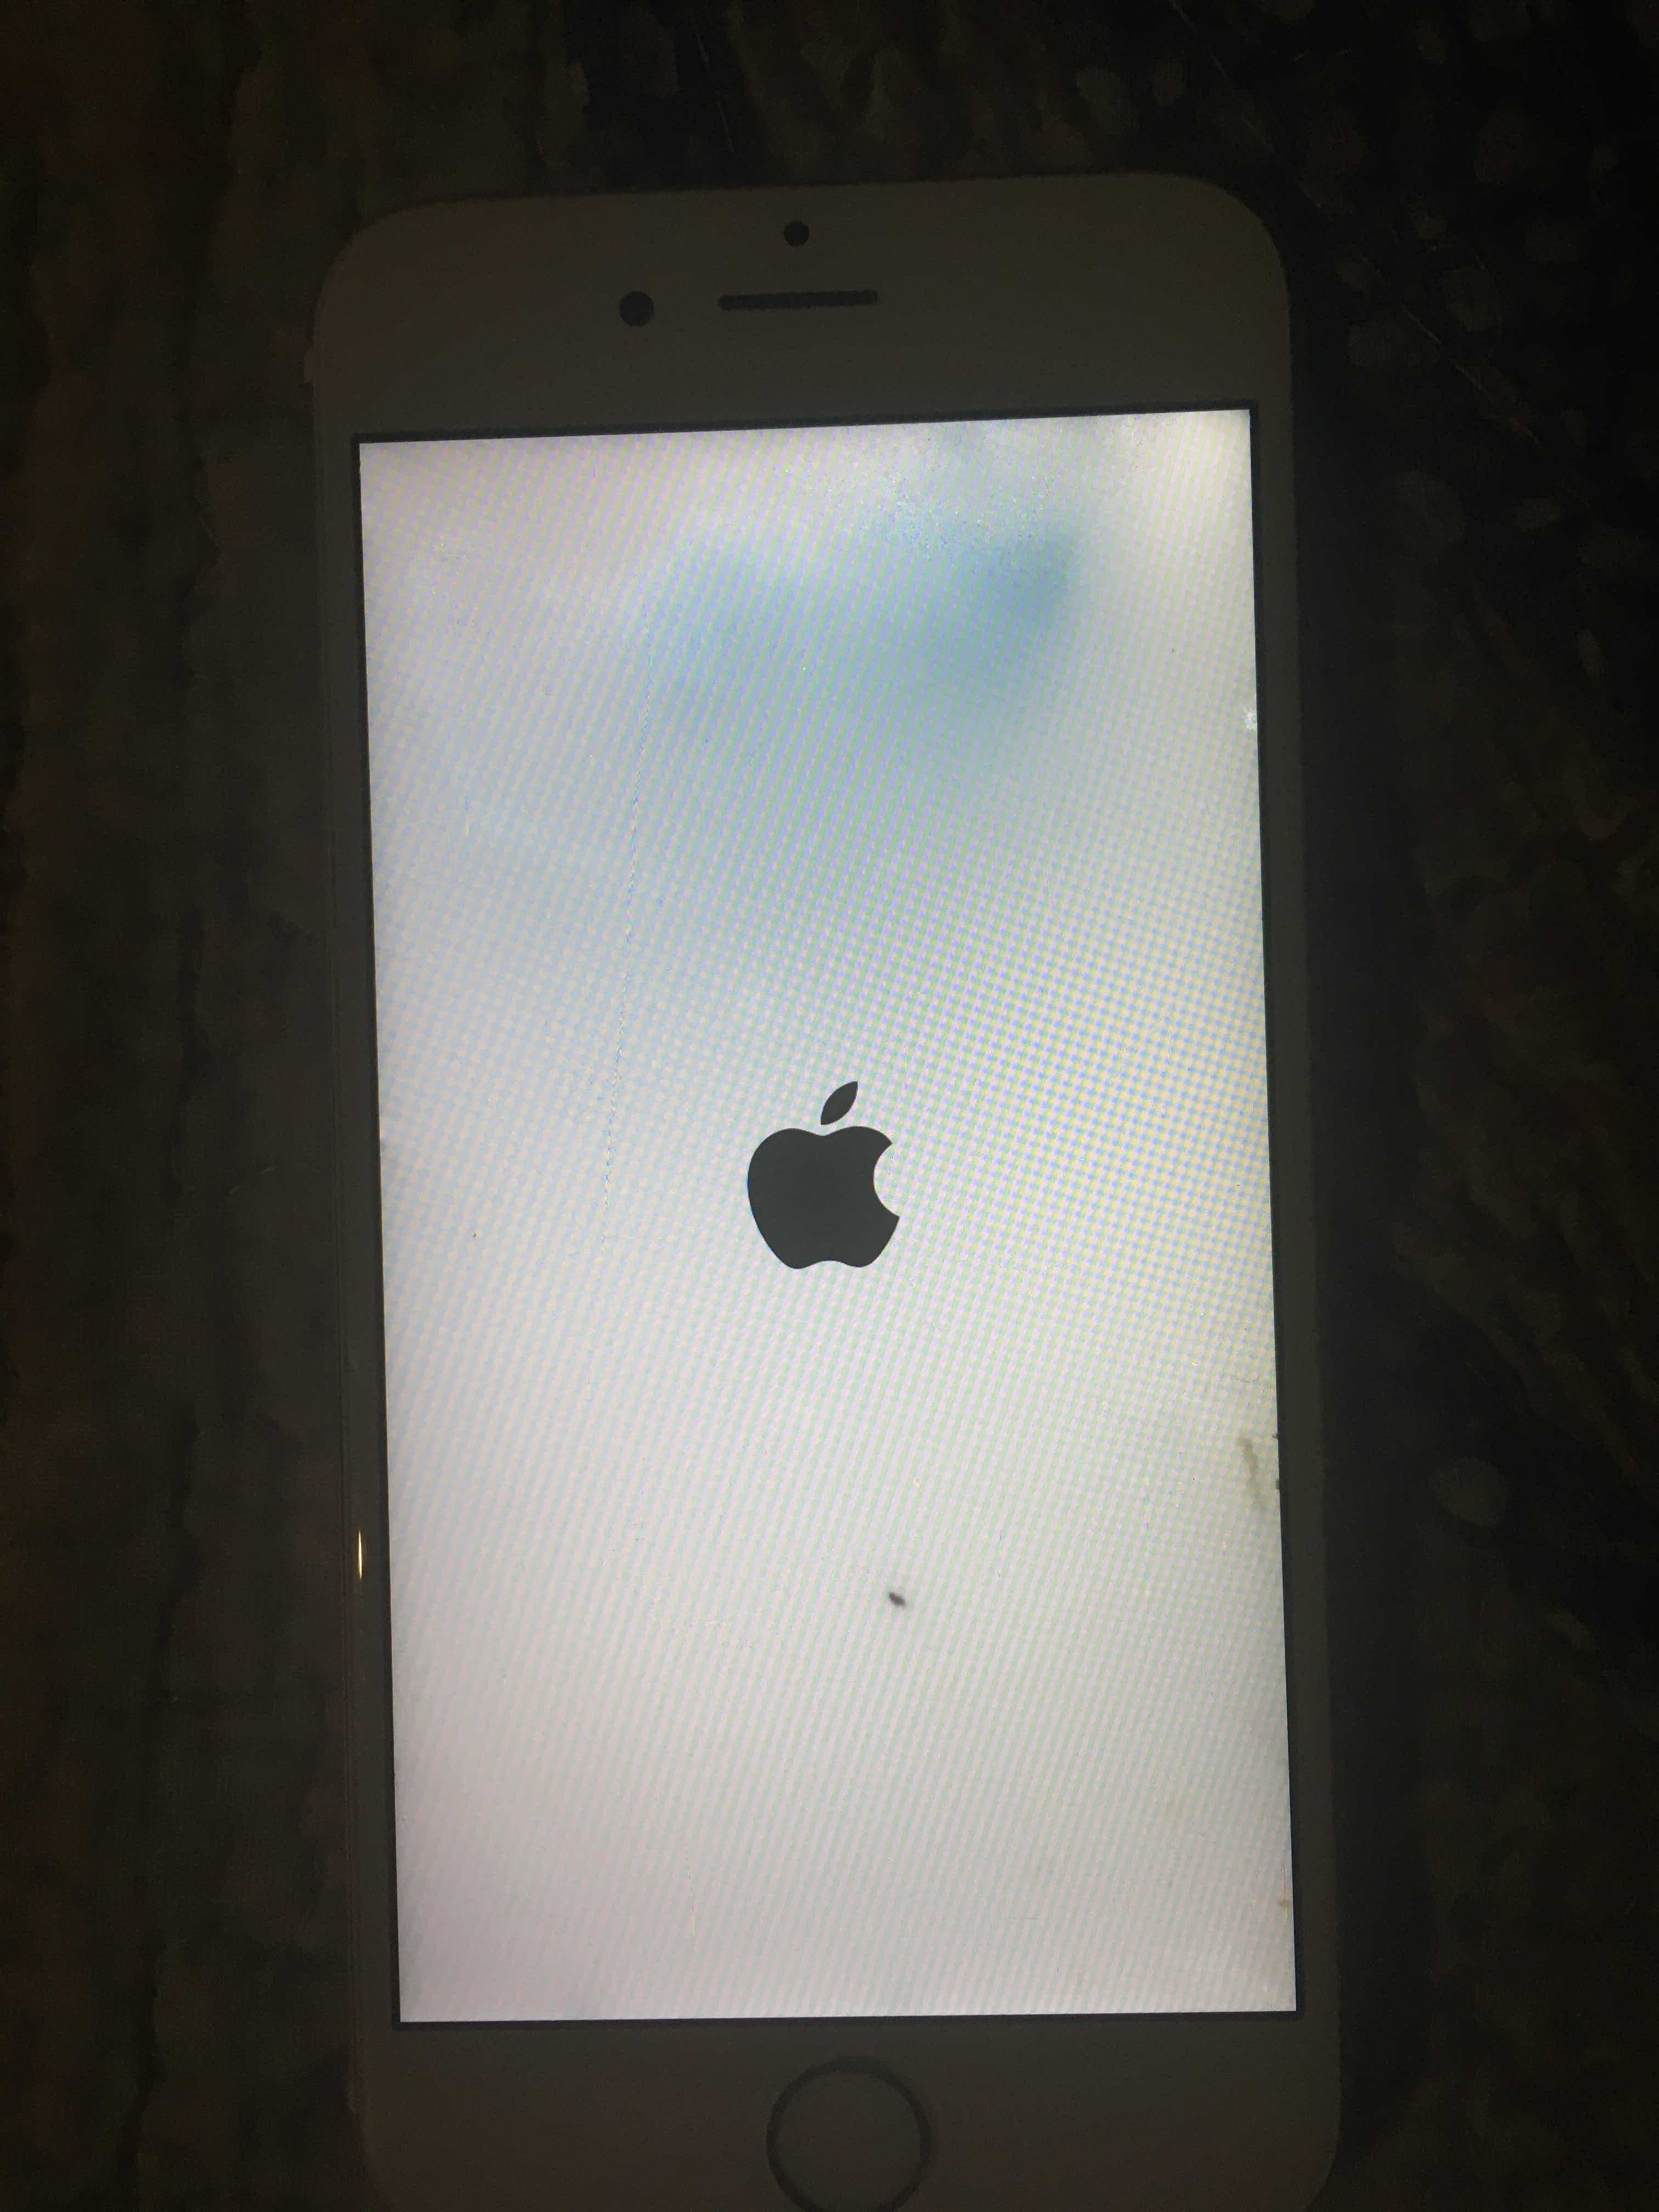 Выключаешь айфон включается. Iphone загорелся. Айфон выключился горит яблоко. На iphone горит яблоко. Айфон 6 горит яблоко.